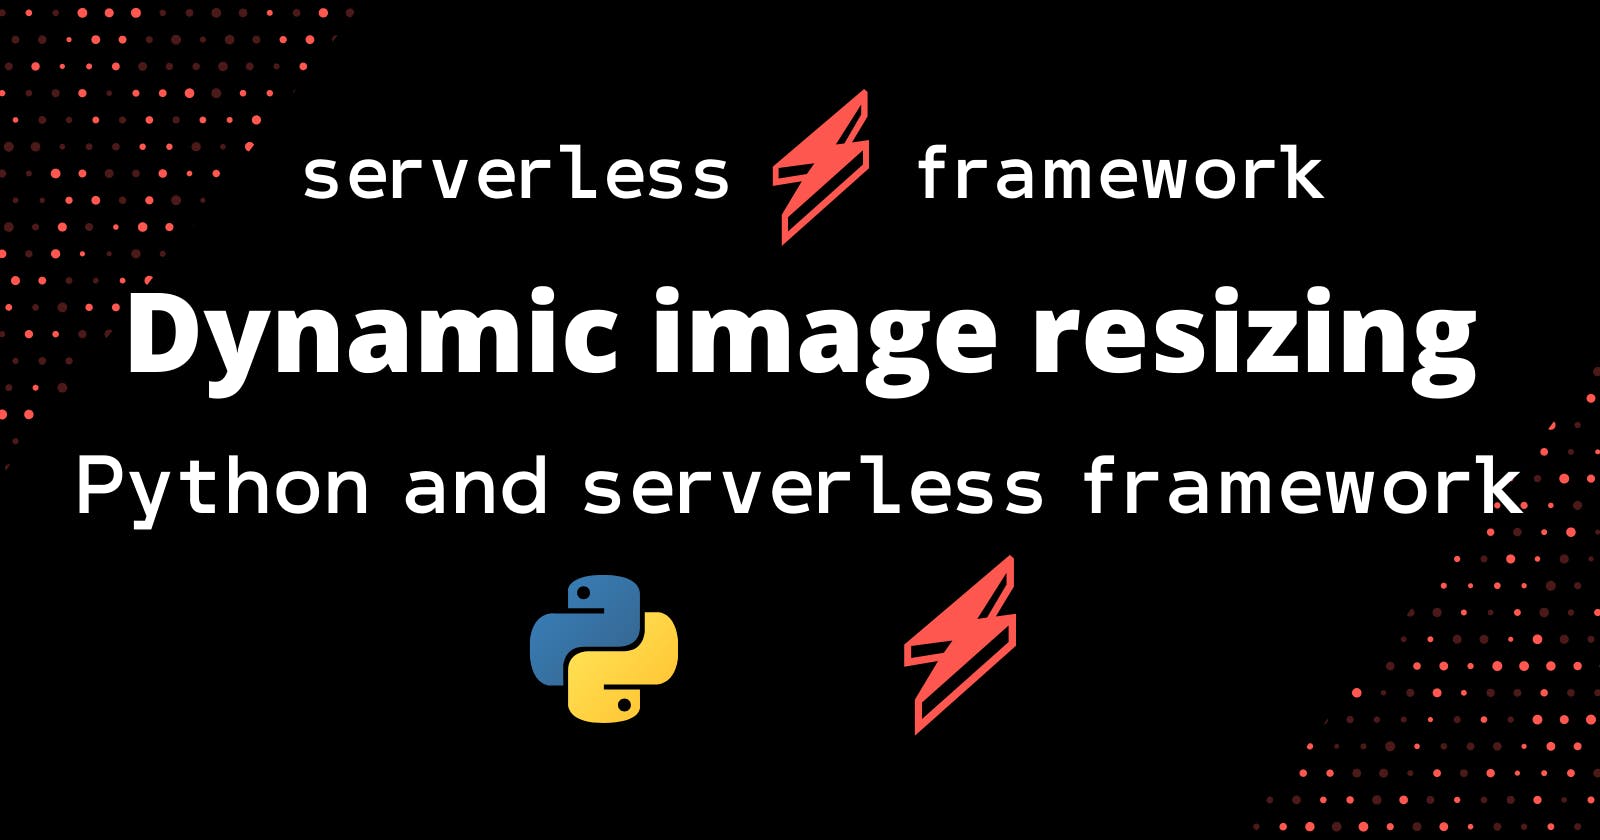 Dynamic image resizing with Python and Serverless Framework